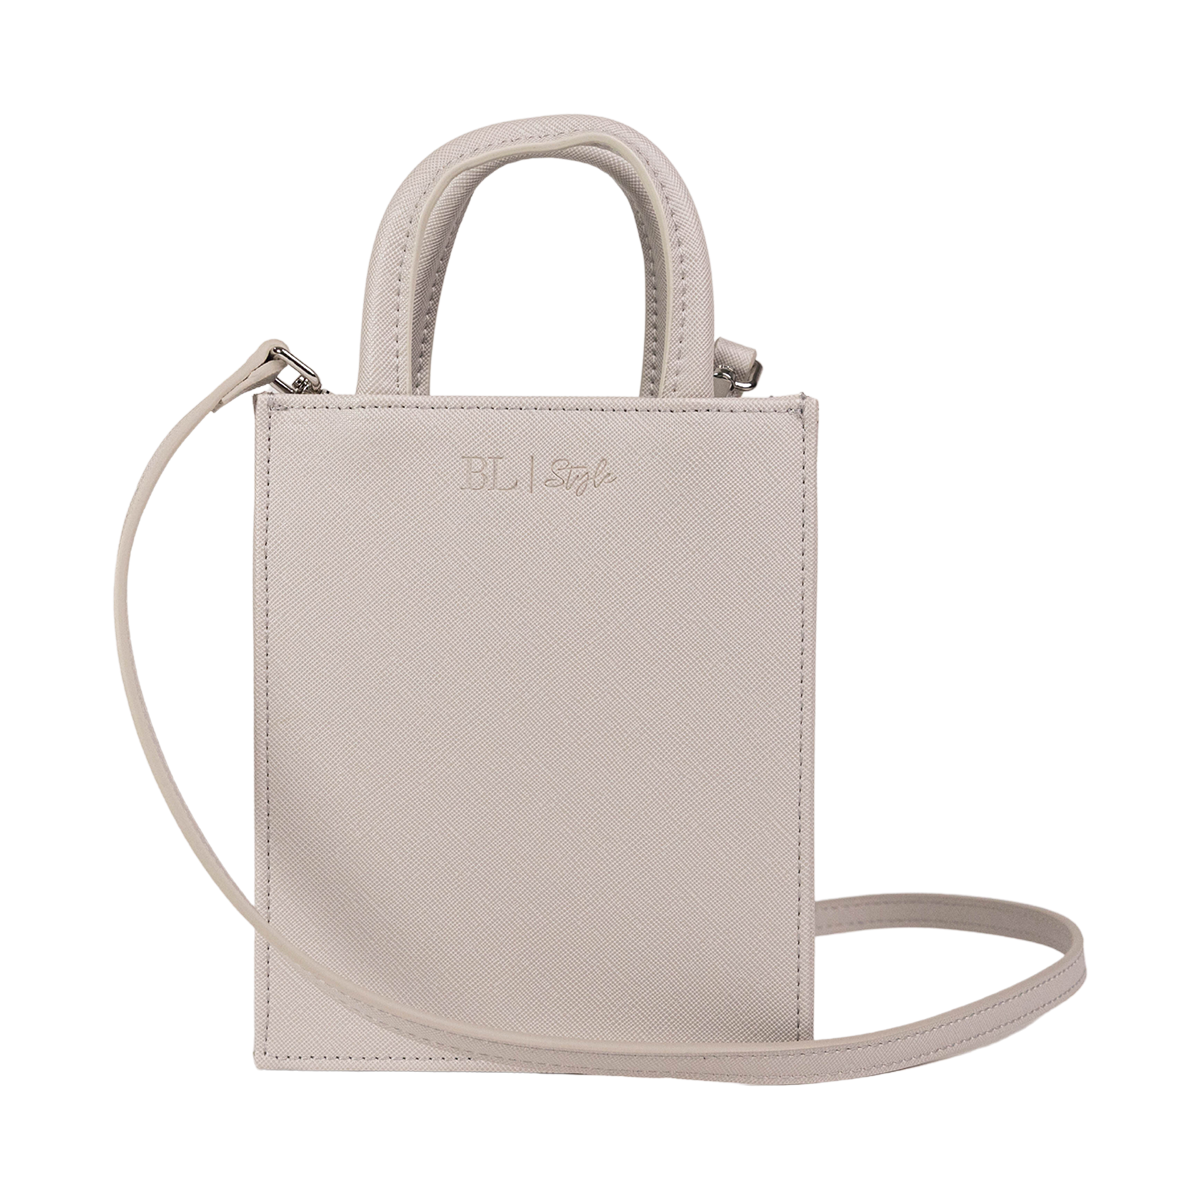 Trendy Handbag - Chantal